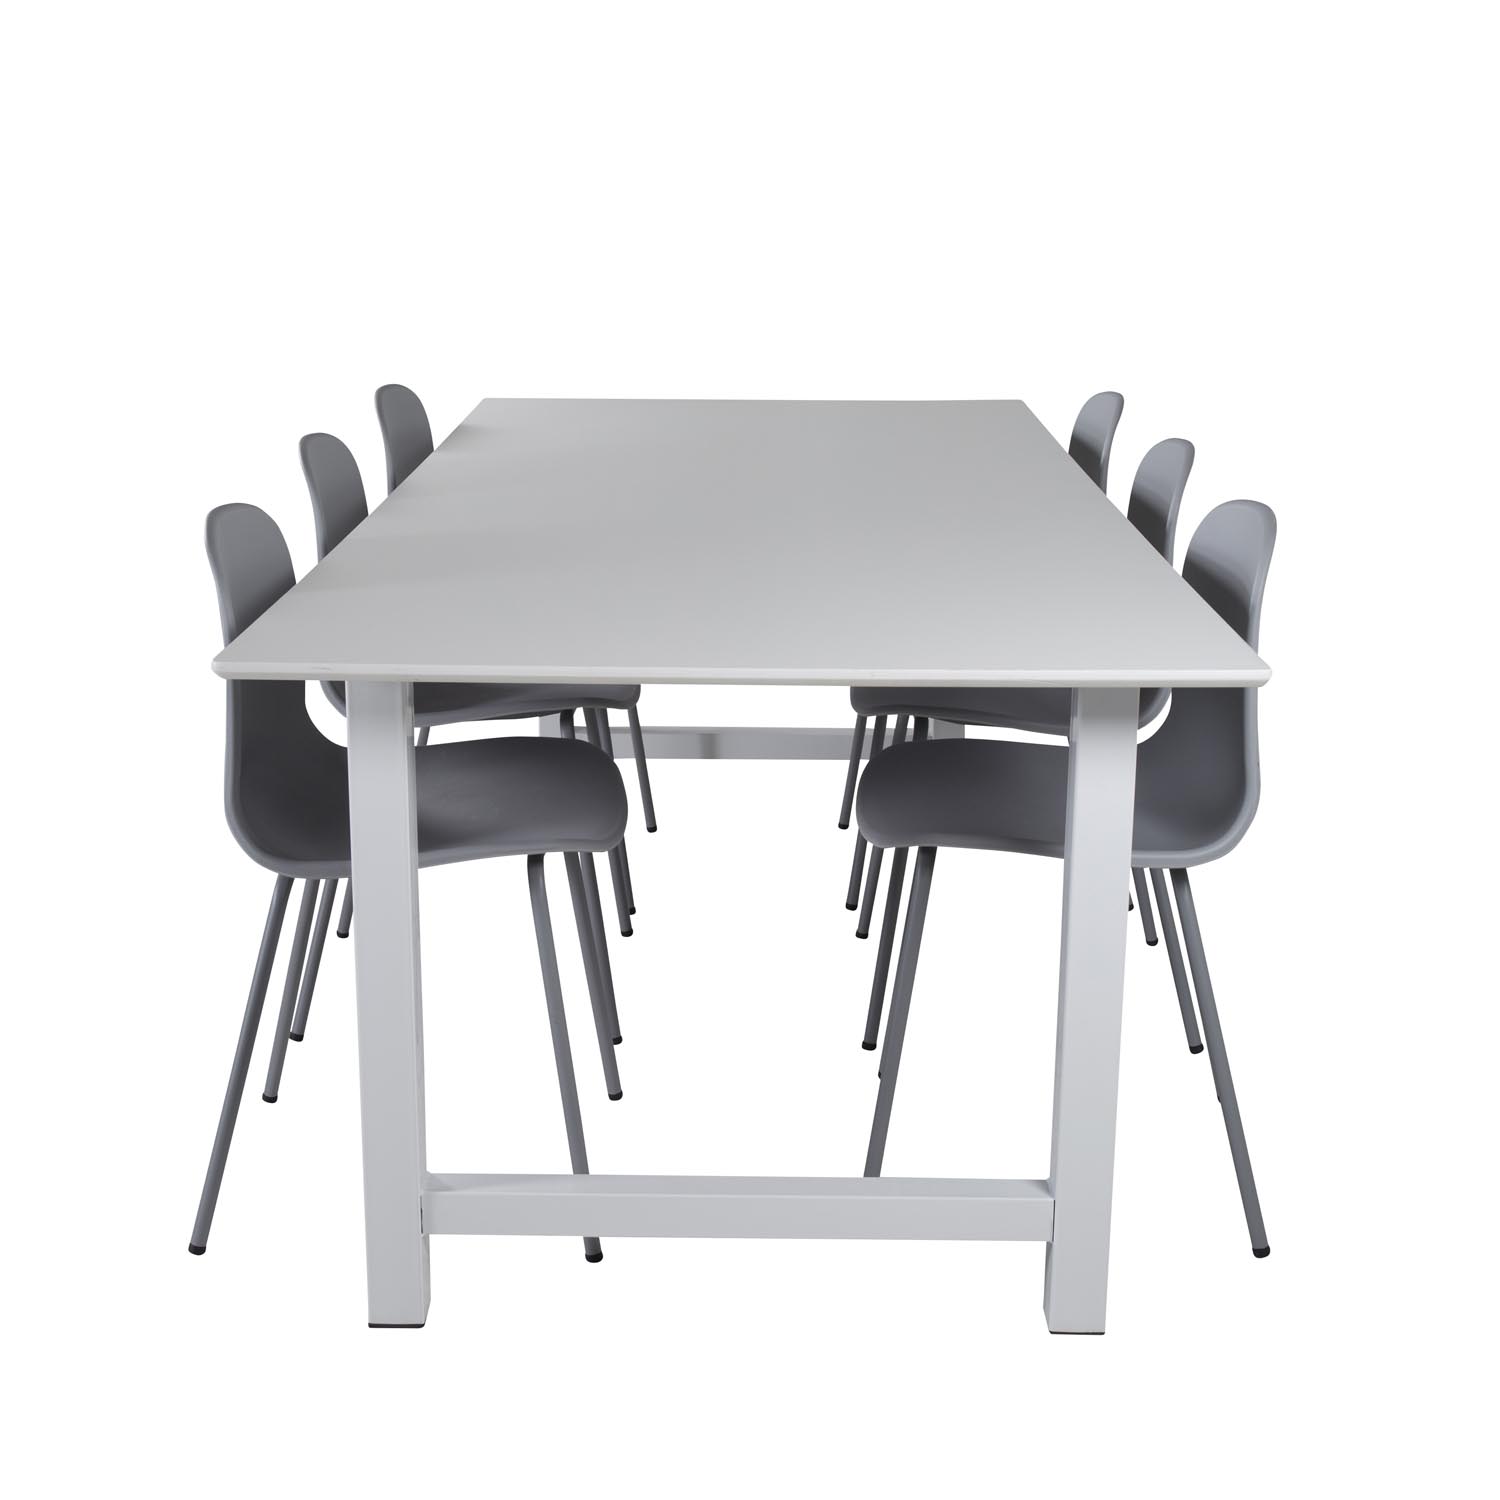 VENTURE DESIGN Count spisebordssæt, m. 6 stole - hvid MDF/hvid metal og grå plastik/grå metal